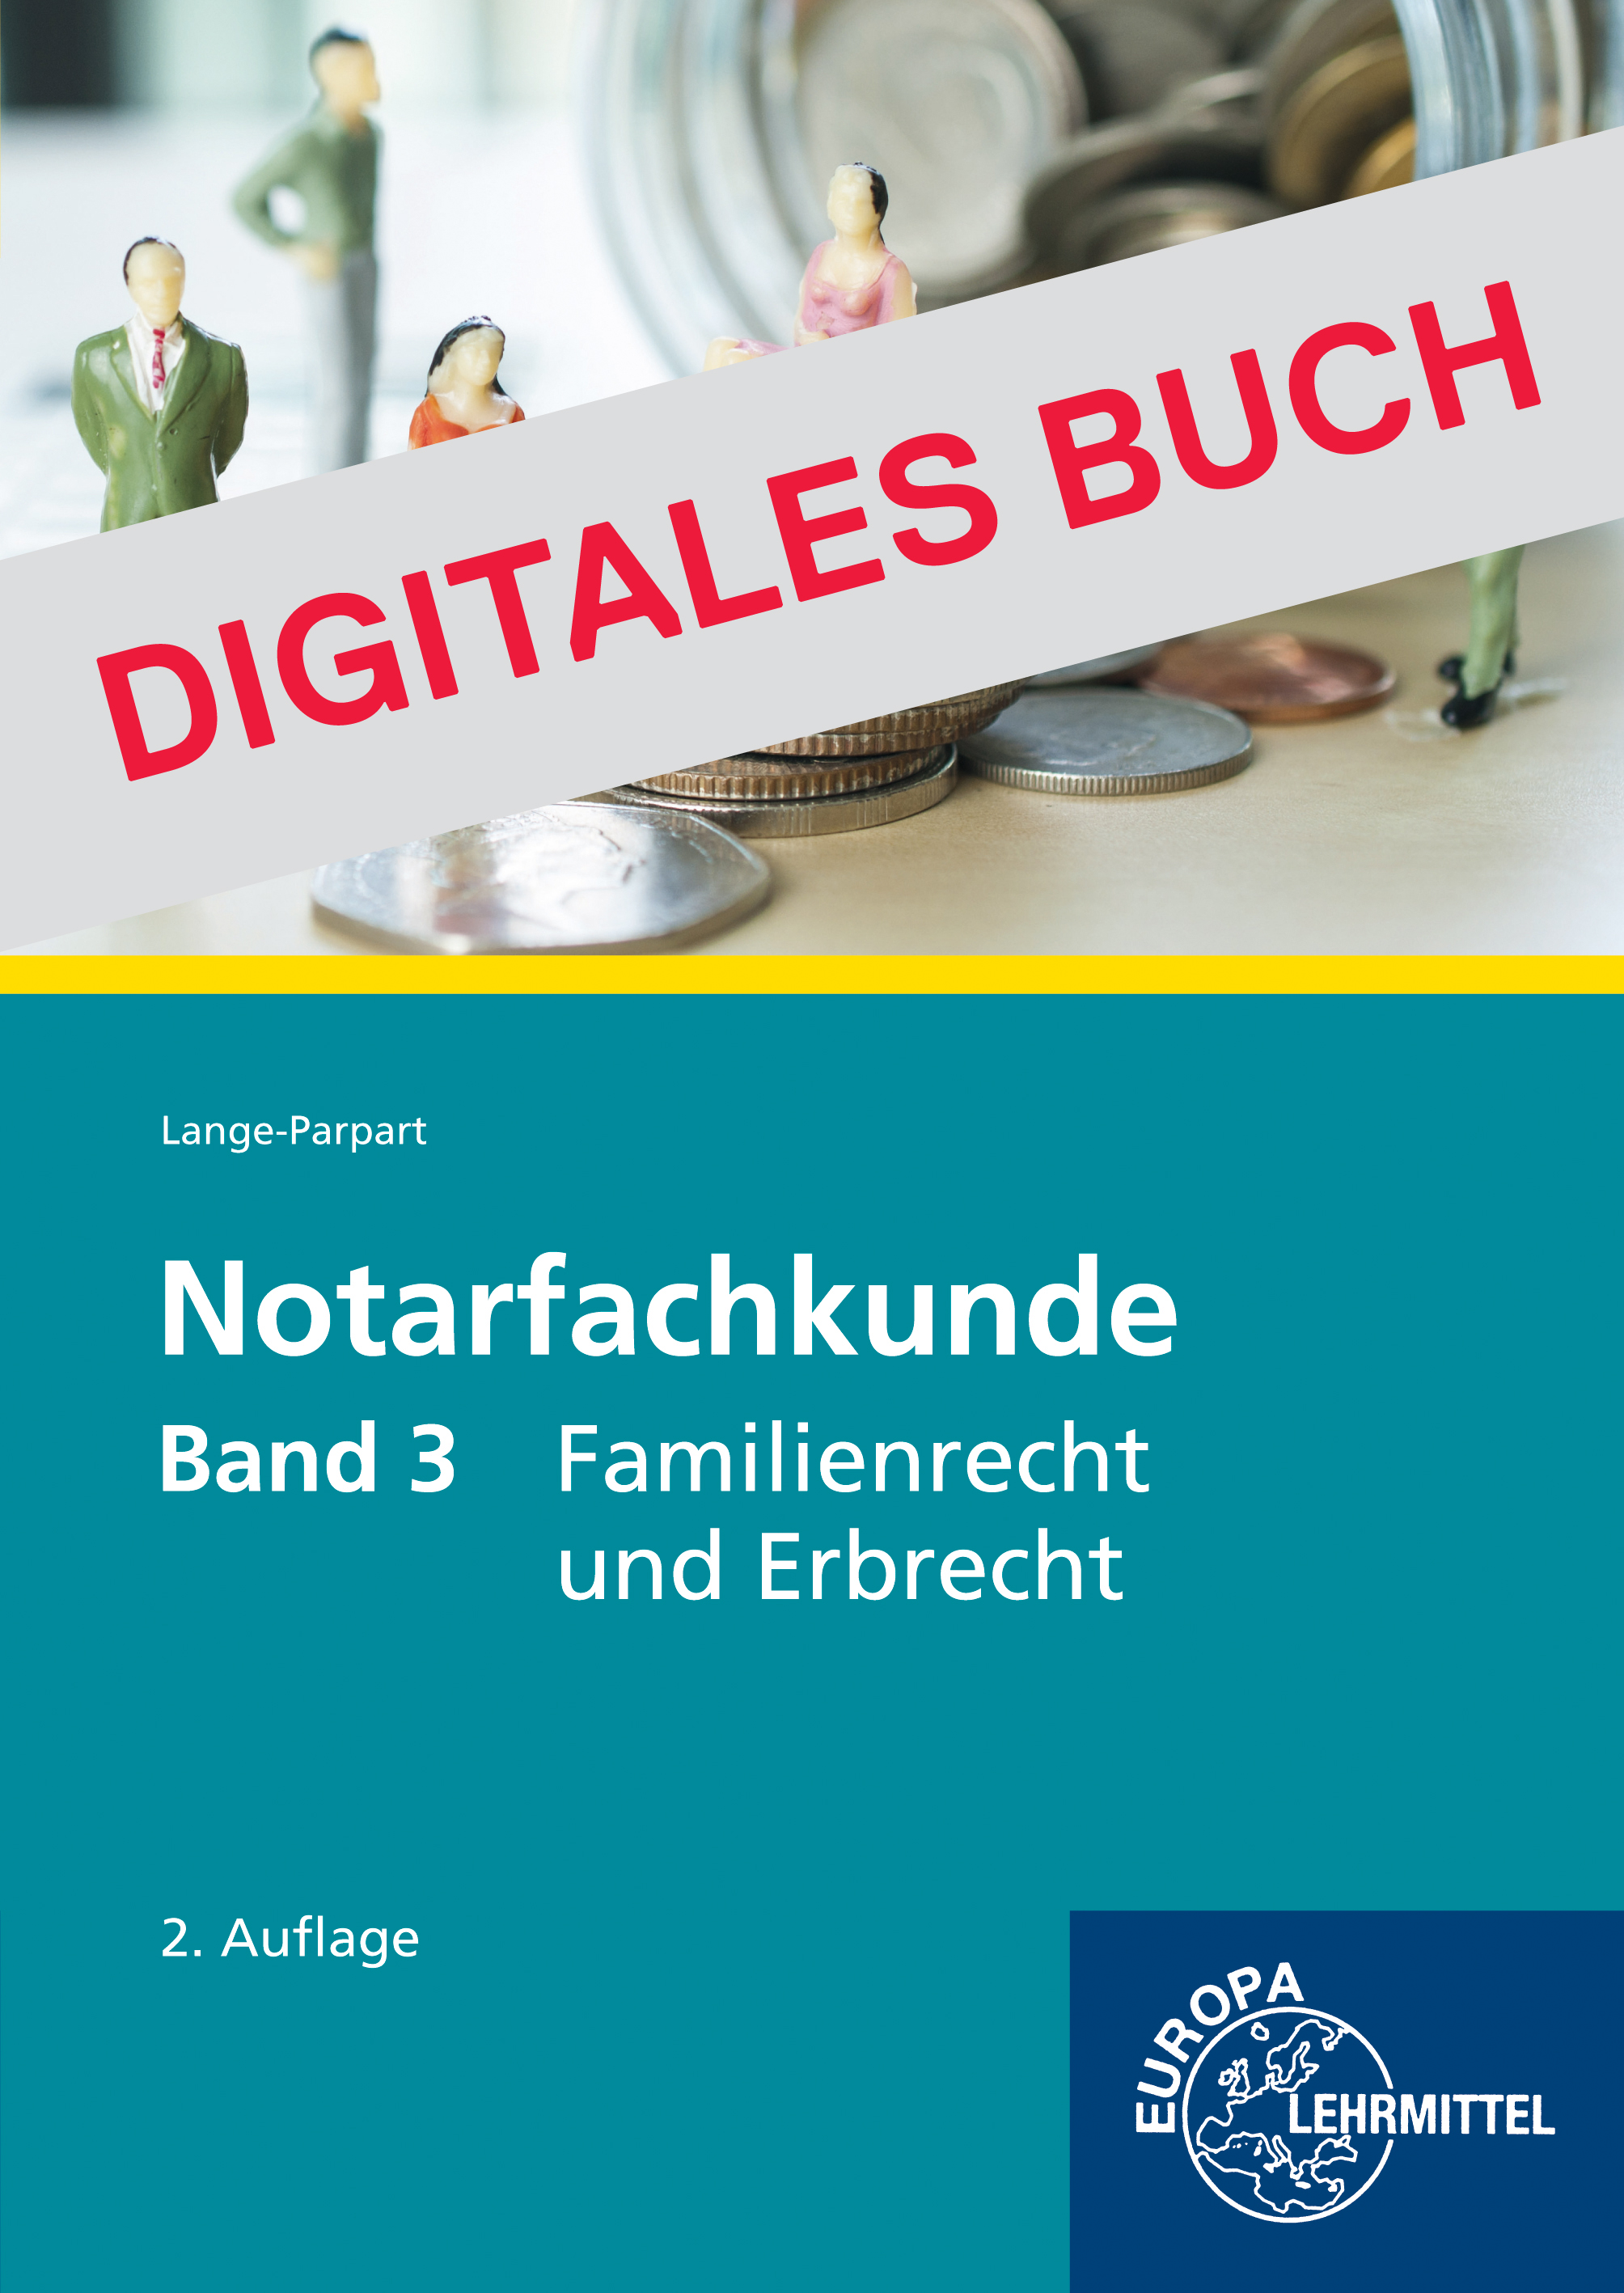 Notarfachkunde - Familienrecht und Erbrecht Band 3 - Digitales Buch